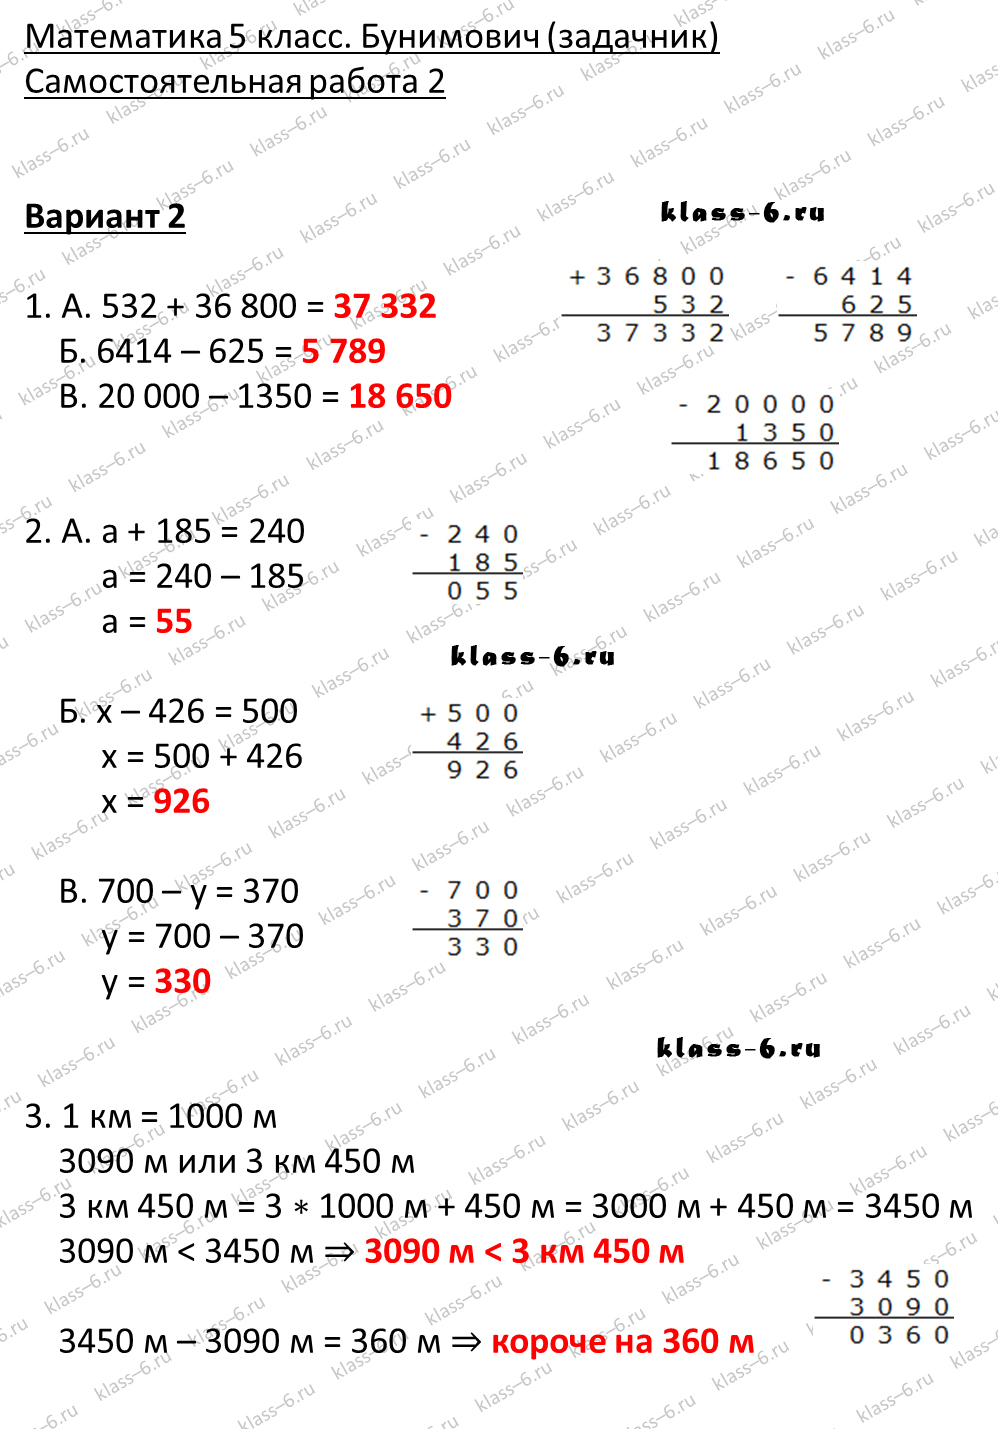 решебник и гдз по математике задачник Бунимович 5 класс самостоятельная работа 2-v2